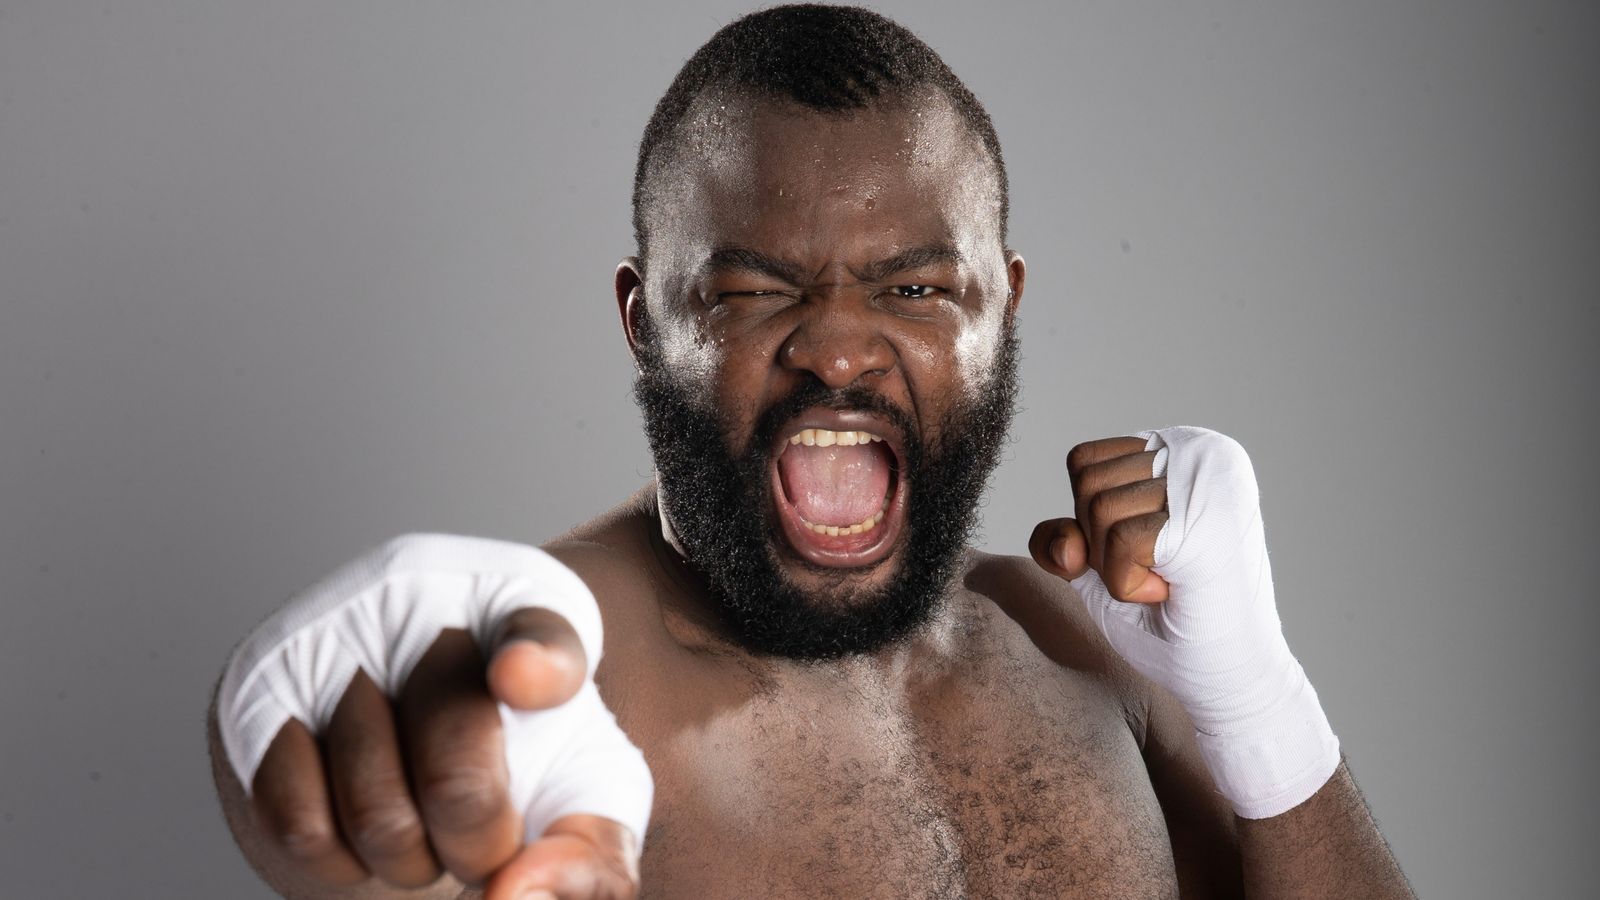 Martin Bakole le daría a Tyson Fury una pelea más dura que nadie, dice el entrenador Billy Nelson |  Noticias de boxeo